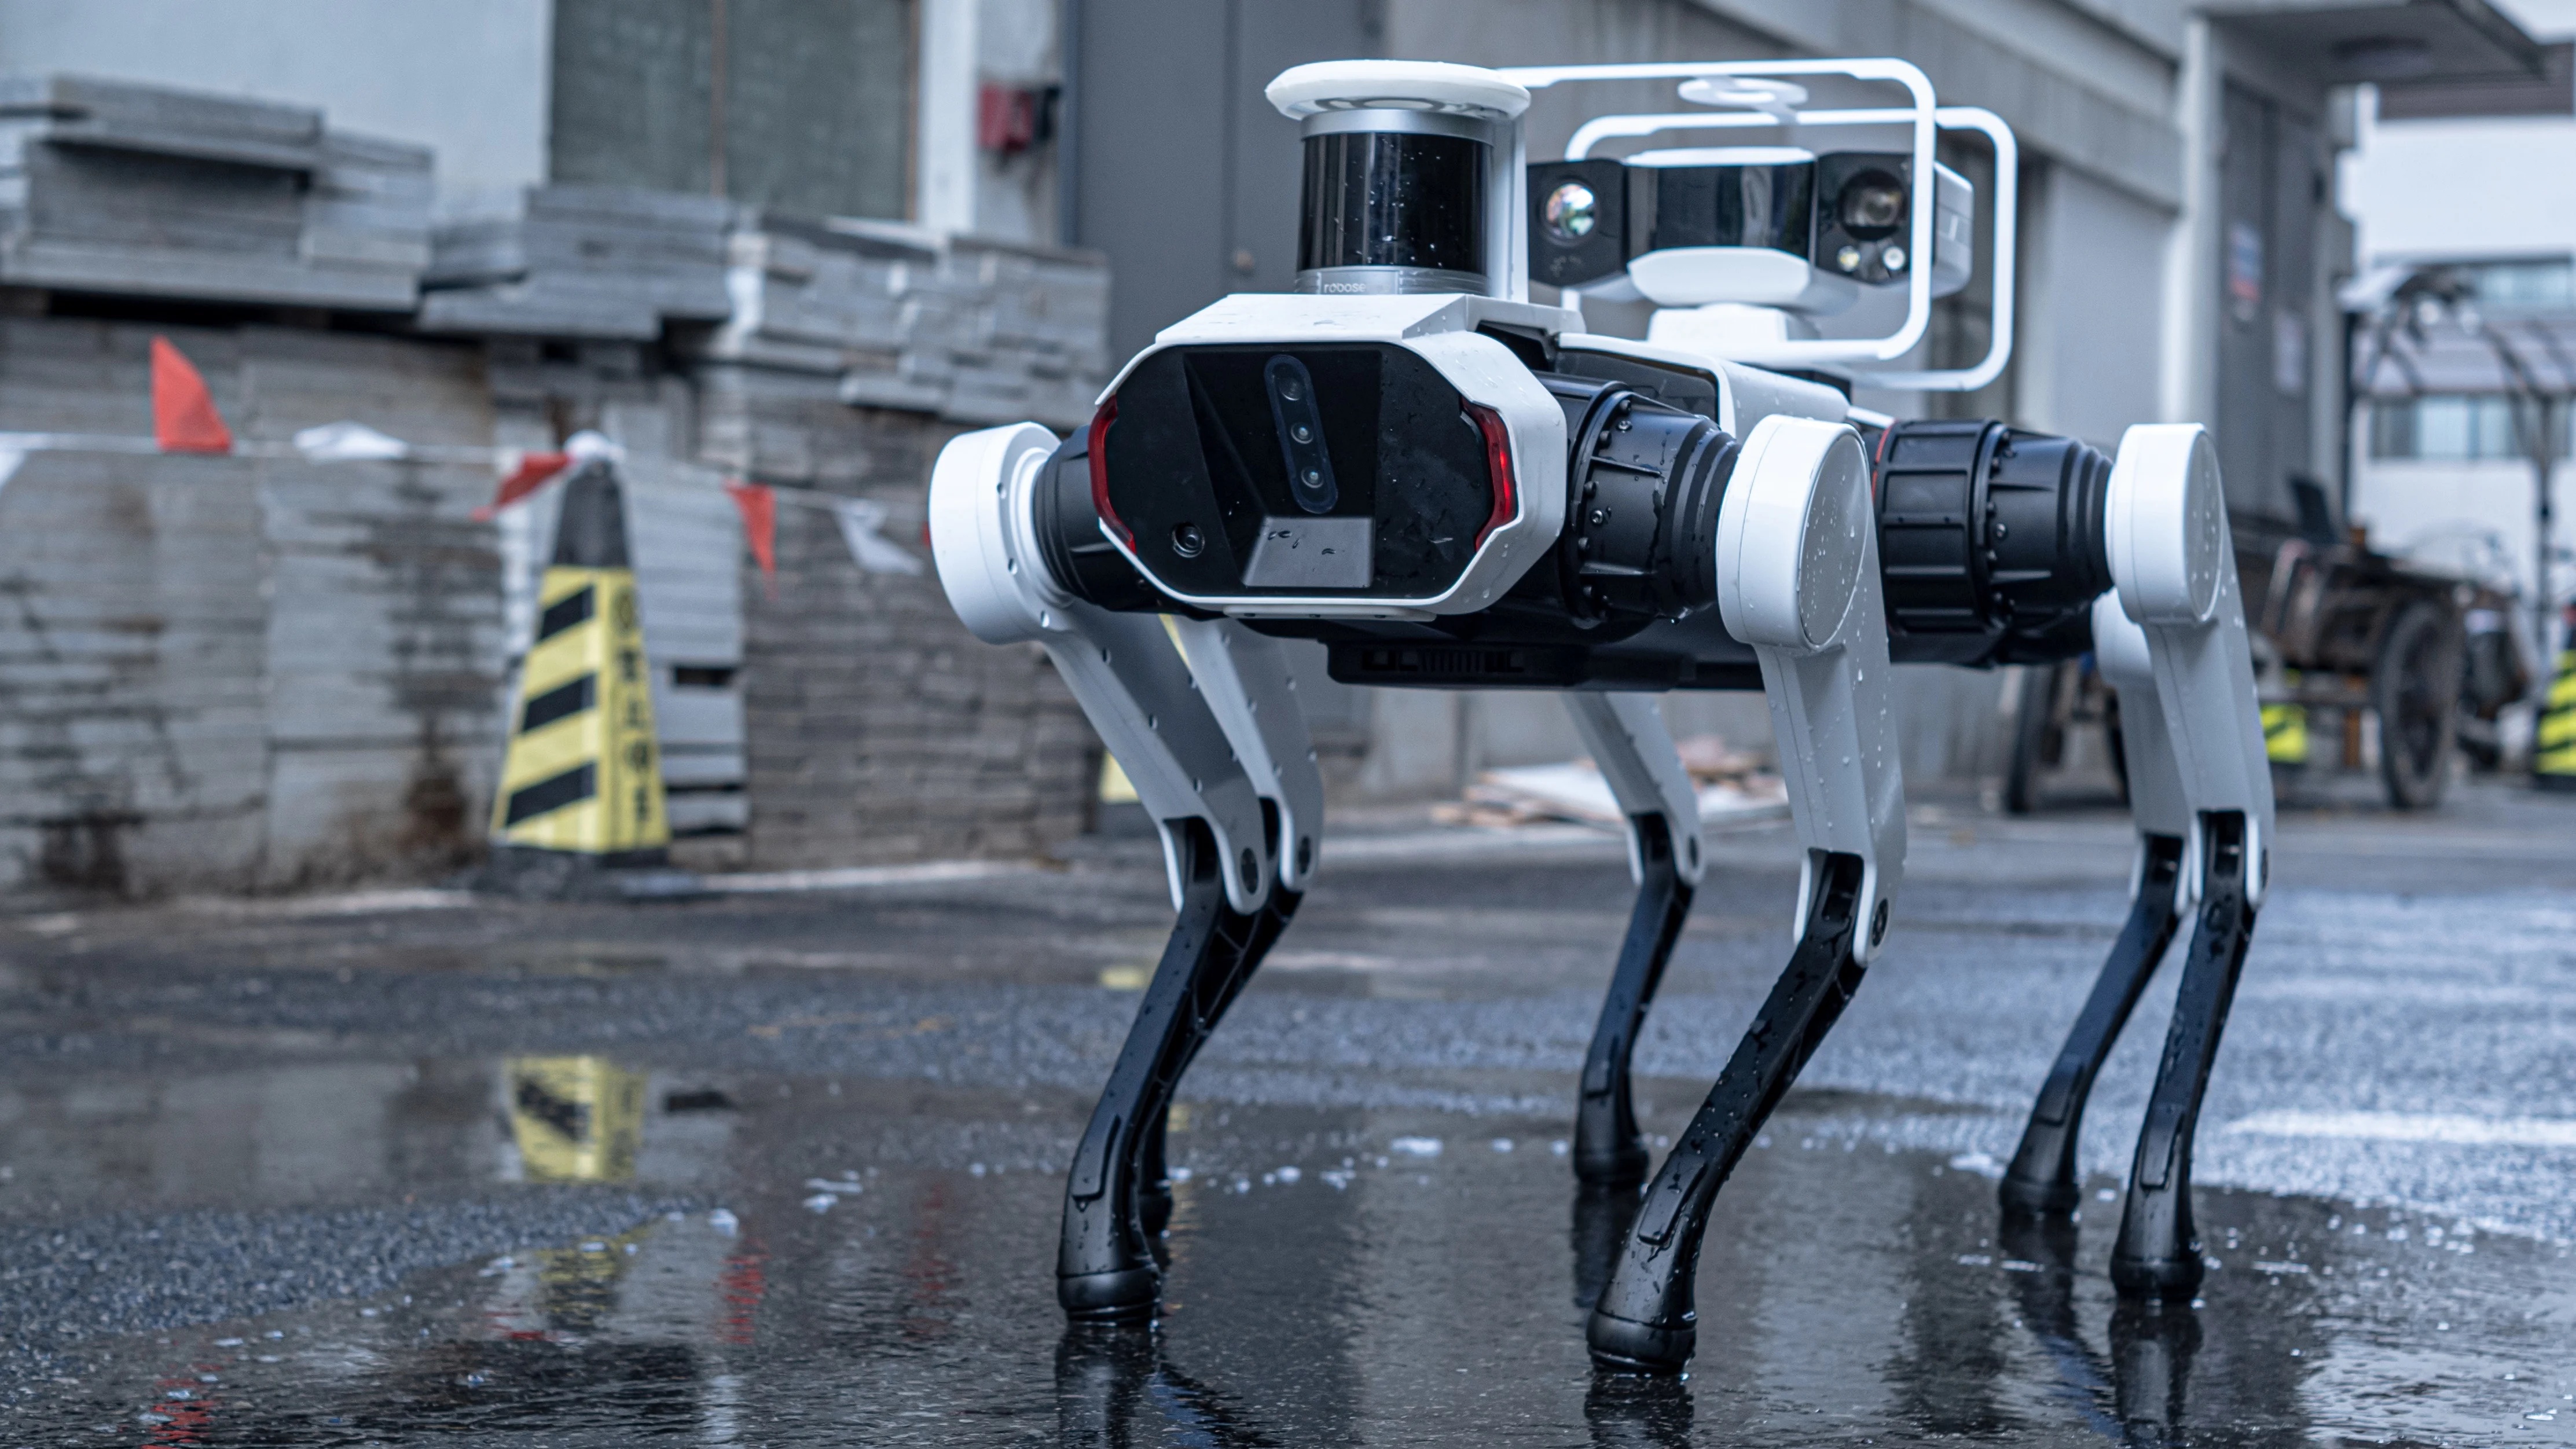 لينوفو تكشف عن روبوت "Daystar Bot GS" بستة أرجل لجمع البيانات